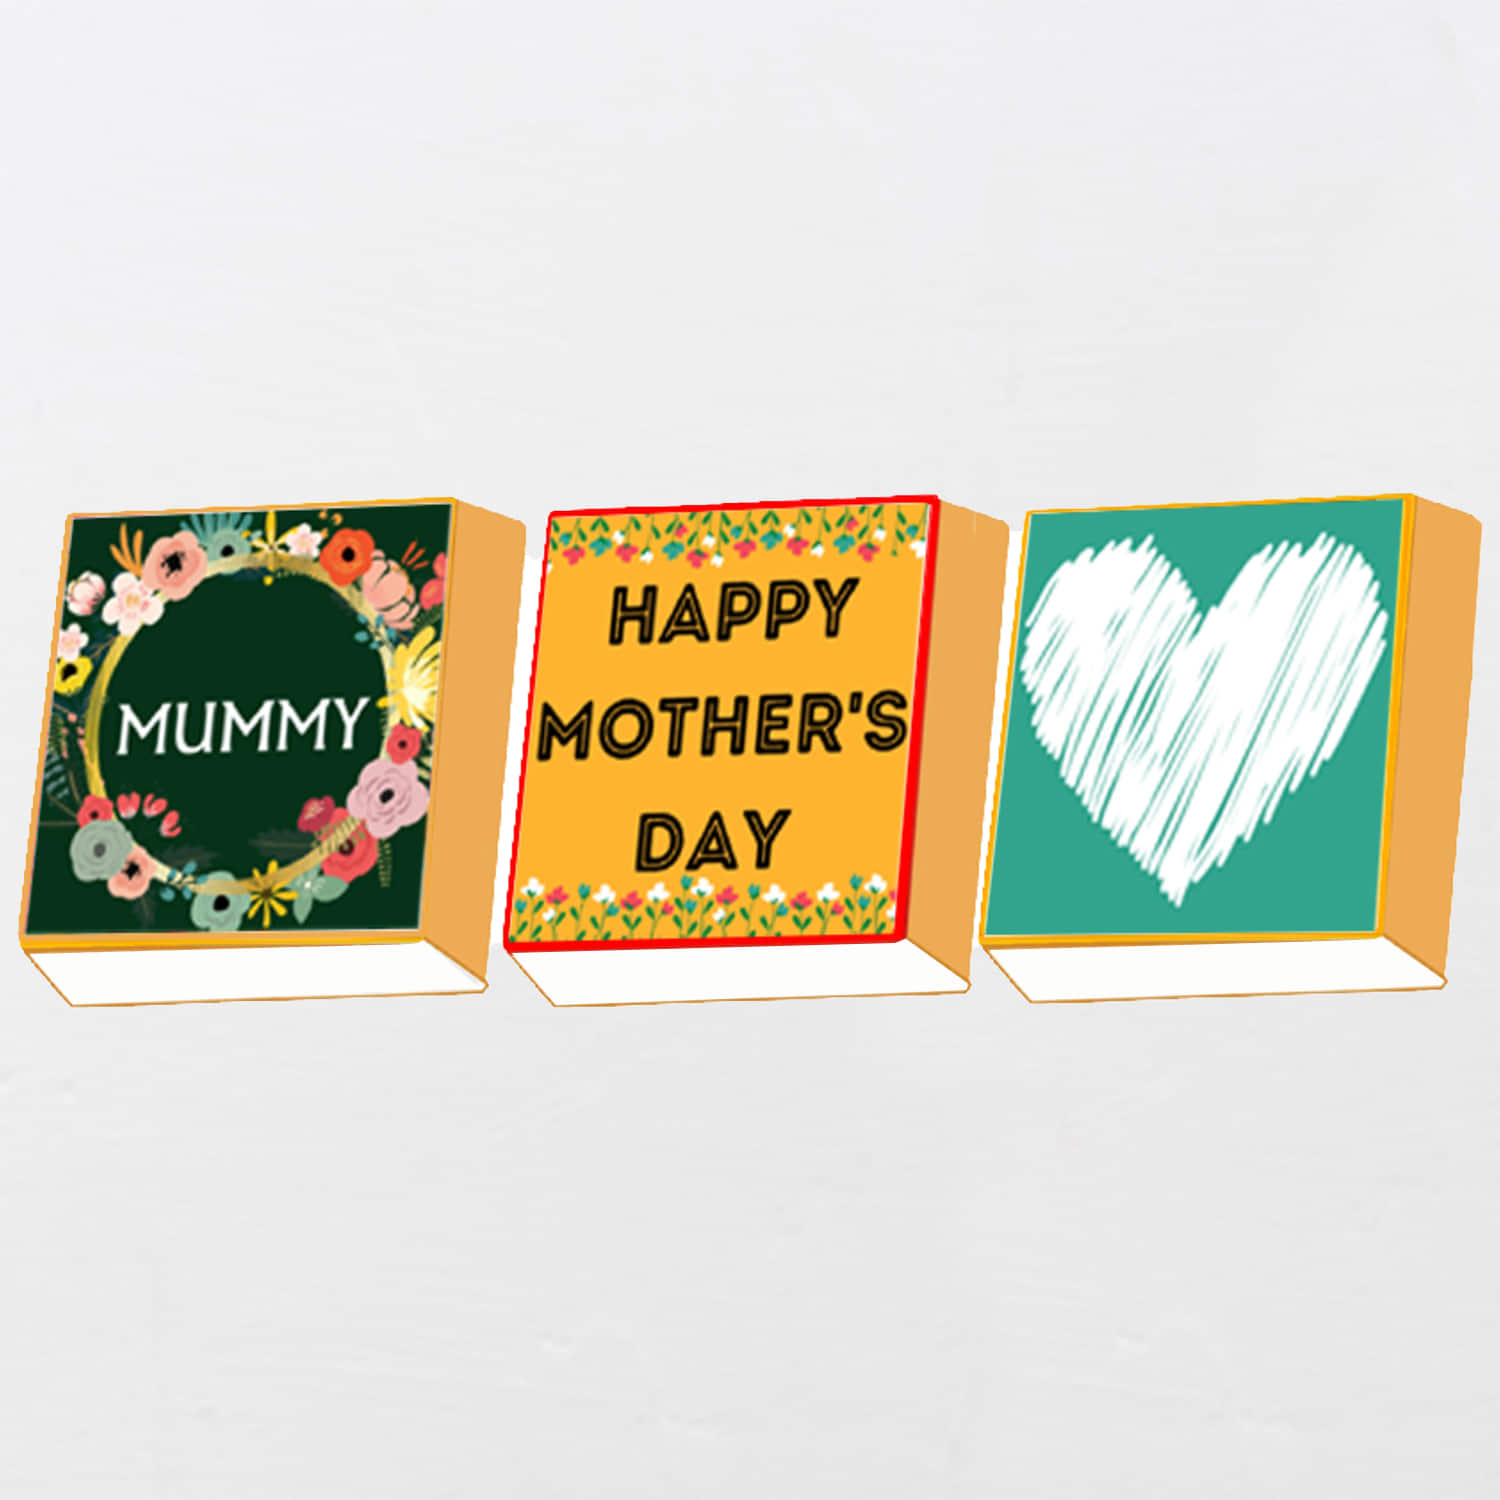 Super Pyari Mum Mug Ammi / Maa / Mom Gift Idea, Mother's Day, Birthday,  Desi, Indian, South Asian, Punjabi, Hindi, Urdu, Ceramic Mug. - Etsy